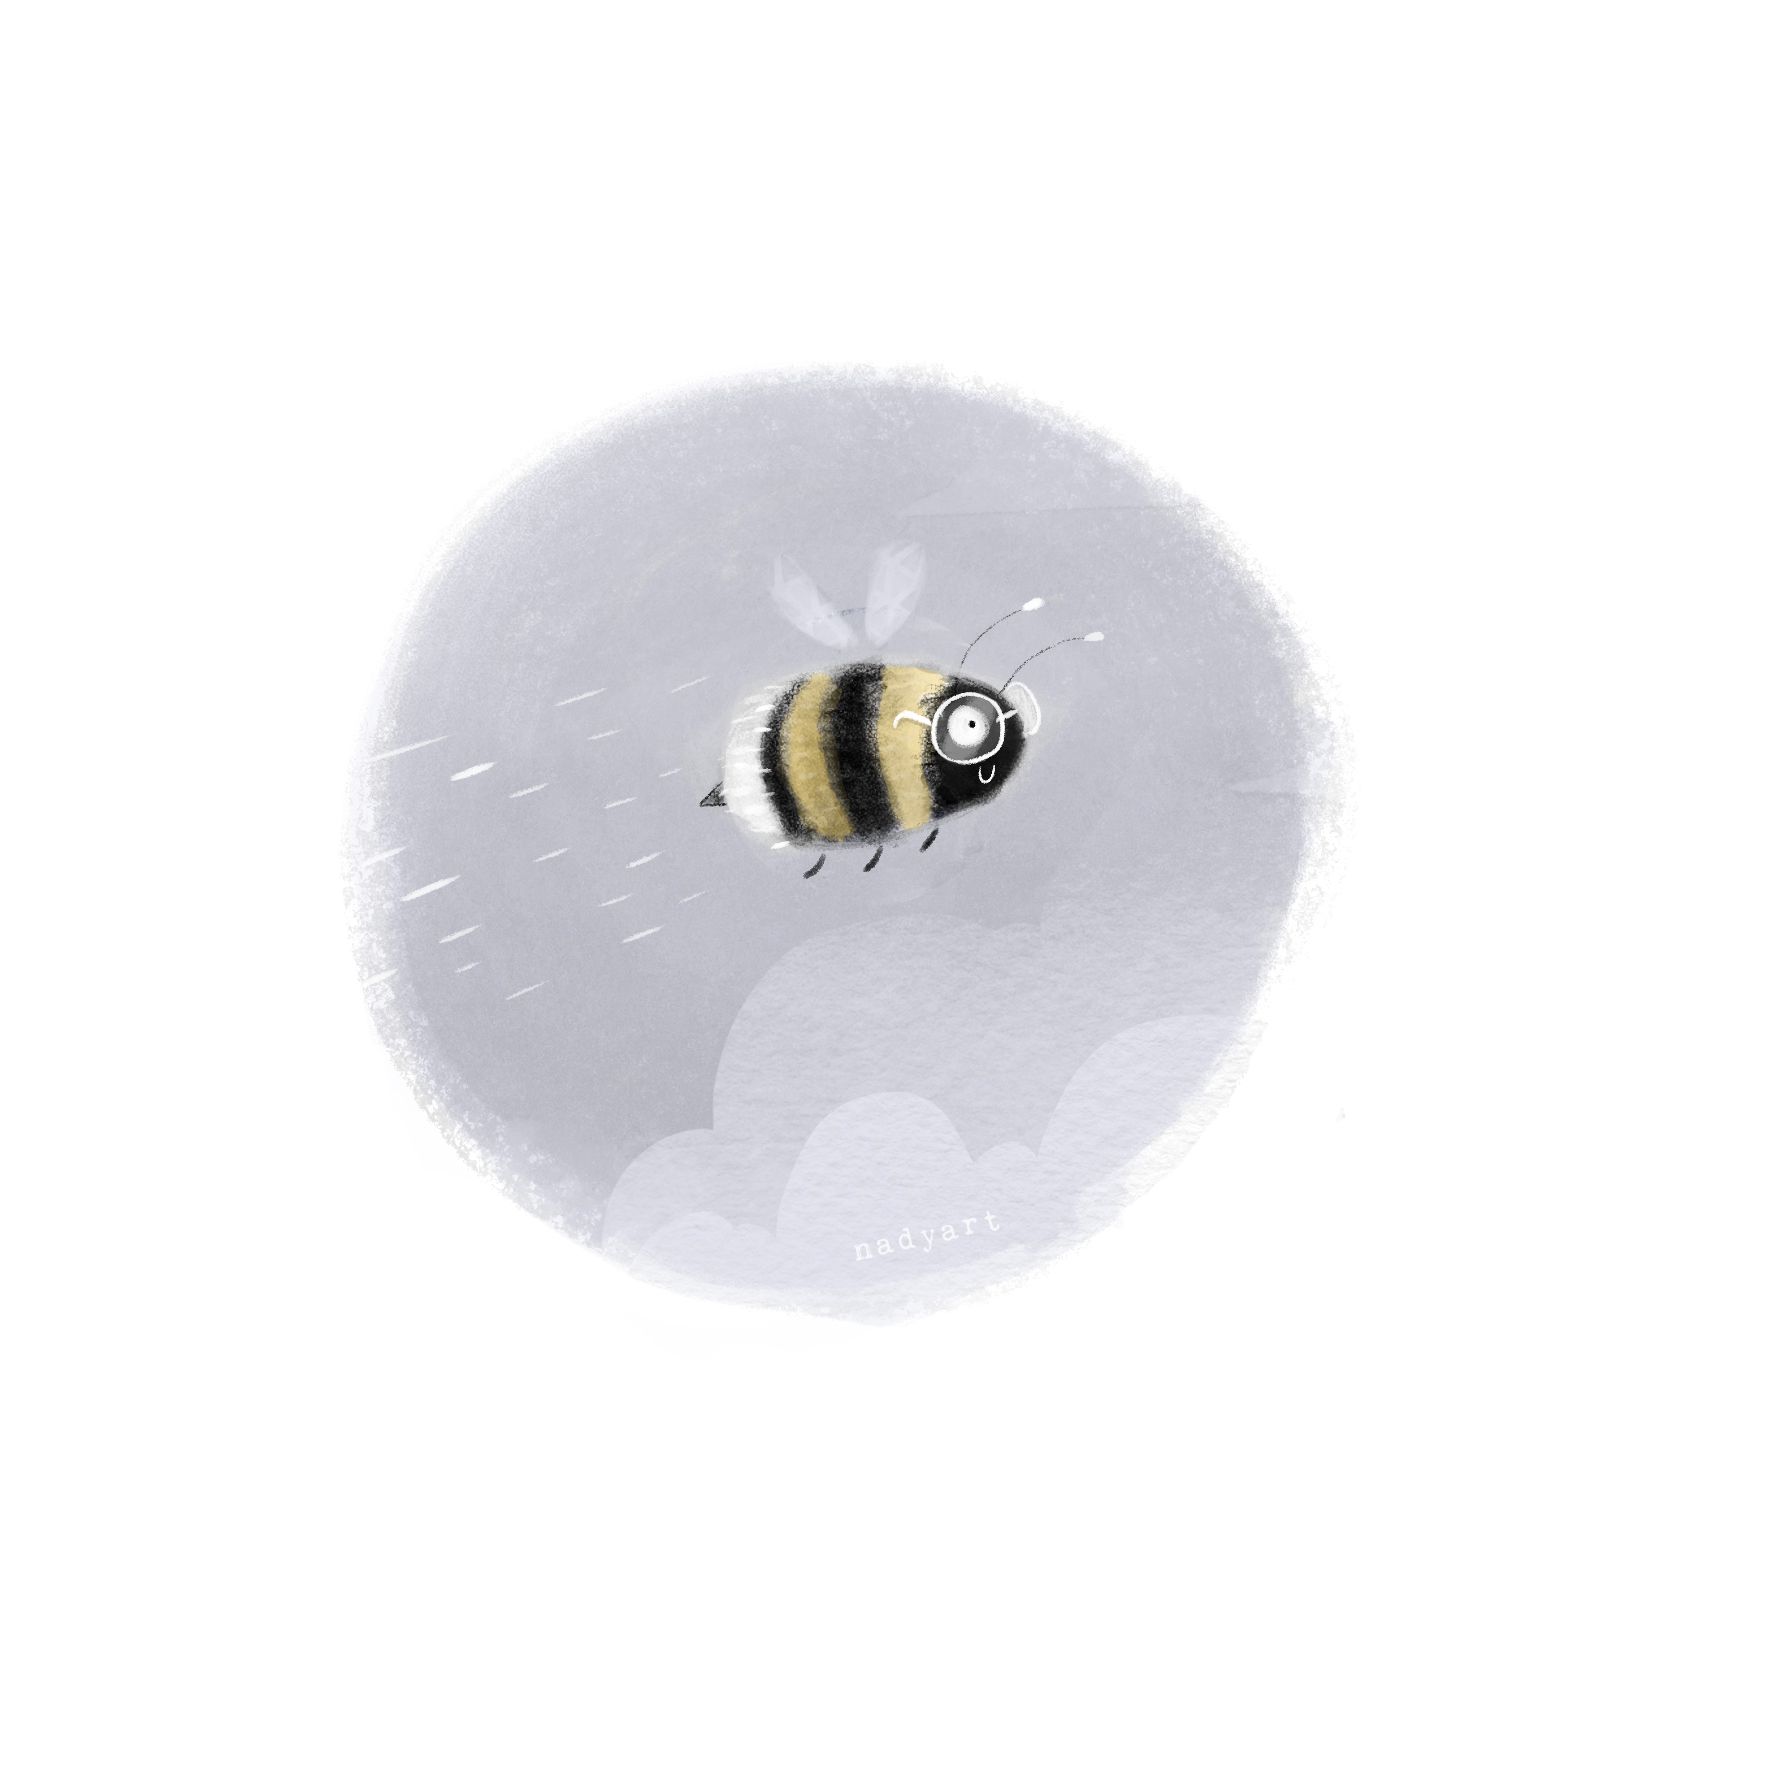 1. Bumblebee SM.jpg